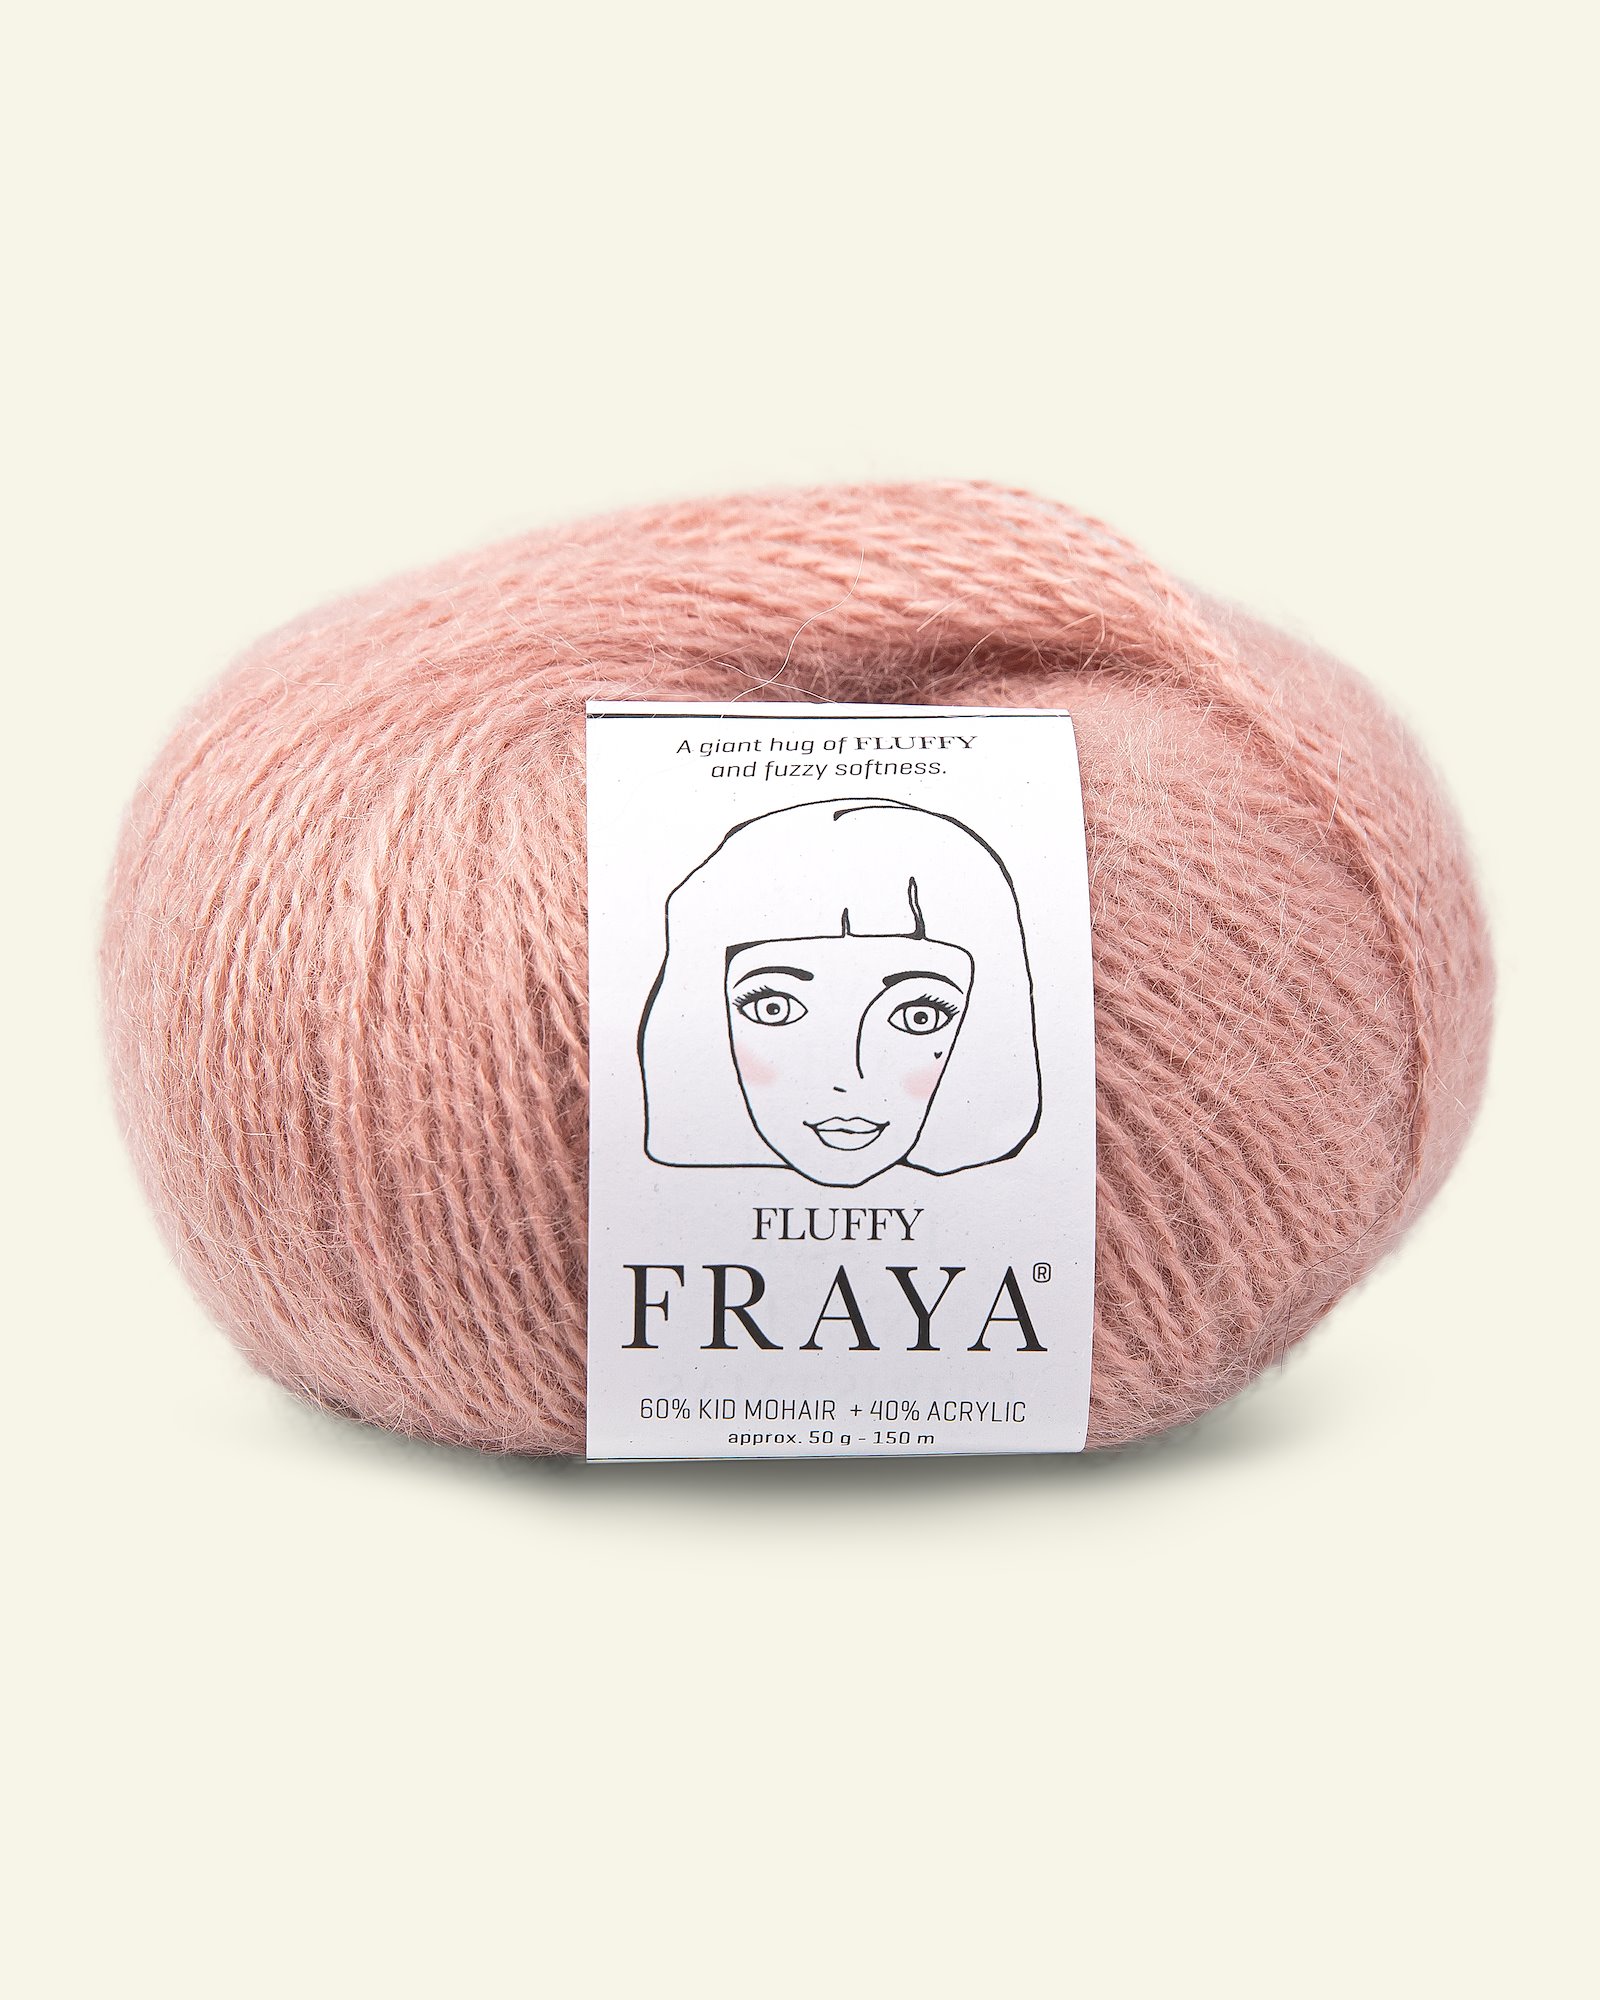 FRAYA, mohair/akrylgarn "Fluffy", støvet rosa 90066389_pack